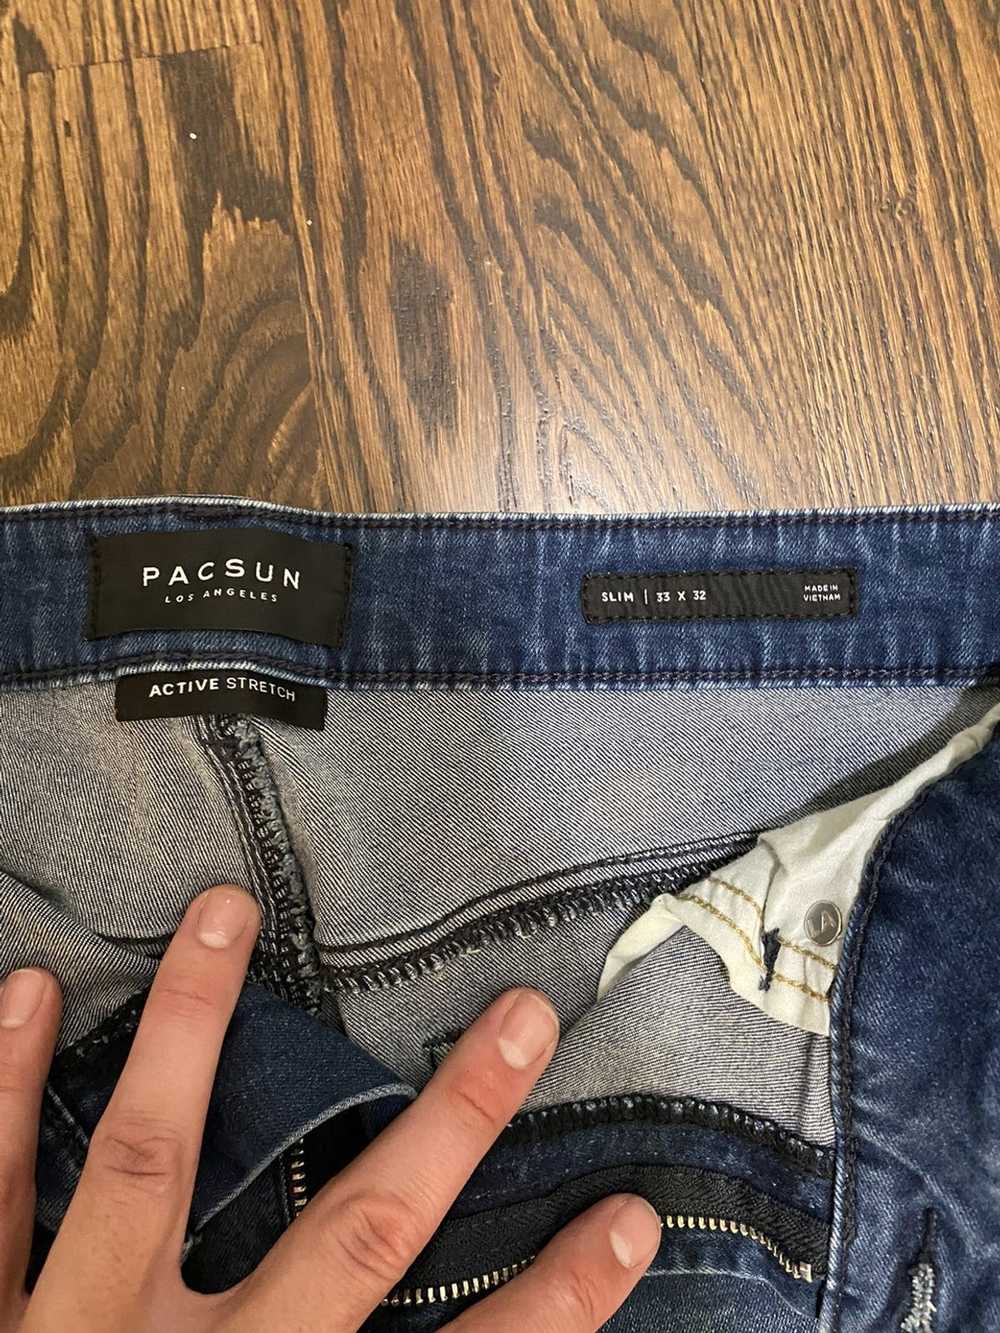 Pacsun Pacsun Active Stretch Slim Jeans 33x32 - image 2